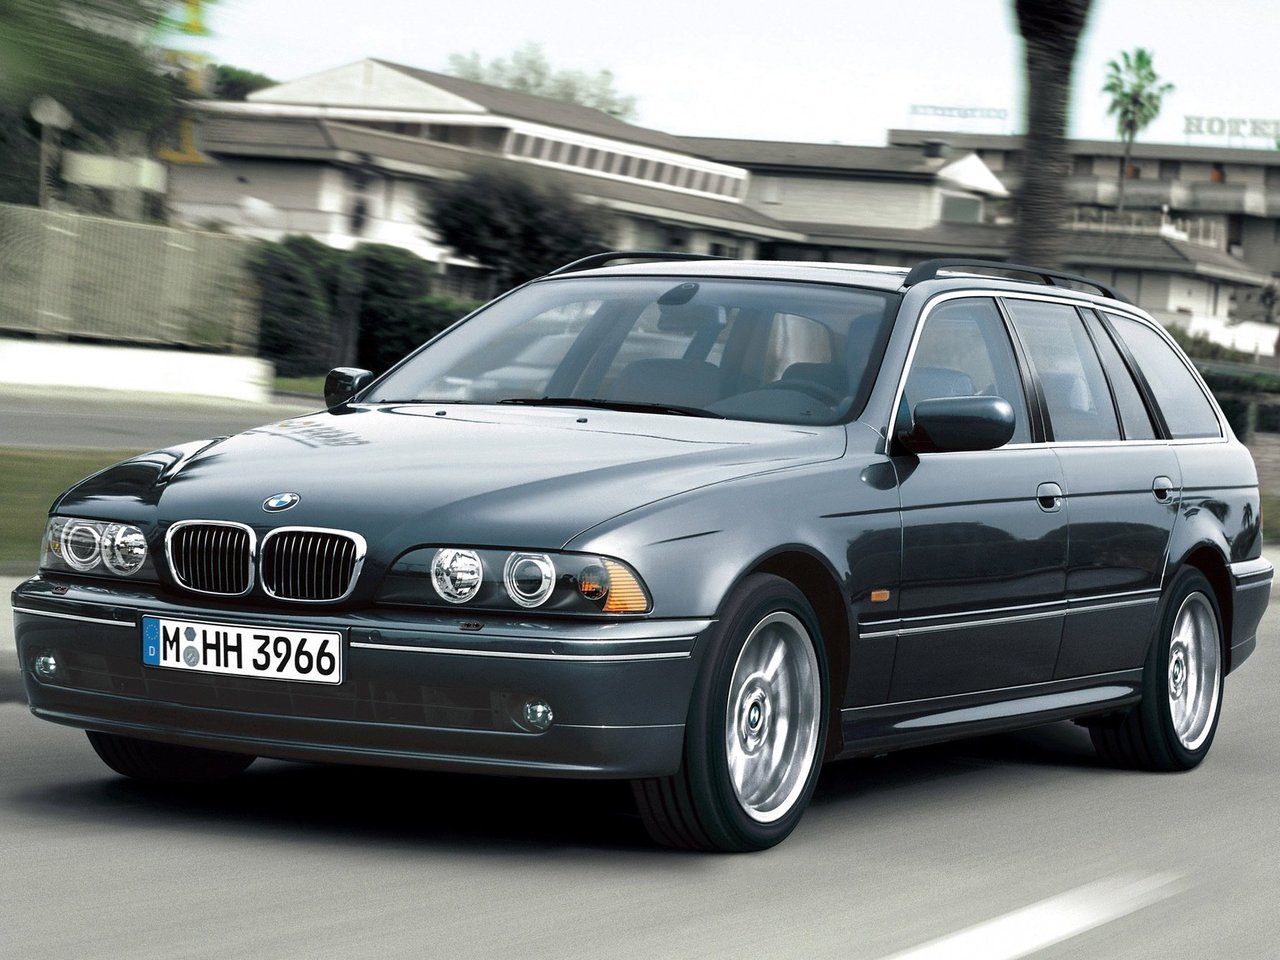 Расход газа восьми комплектаций универсала пять дверей BMW 5 серия. Разница стоимости заправки газом и бензином. Автономный пробег до и после установки ГБО.